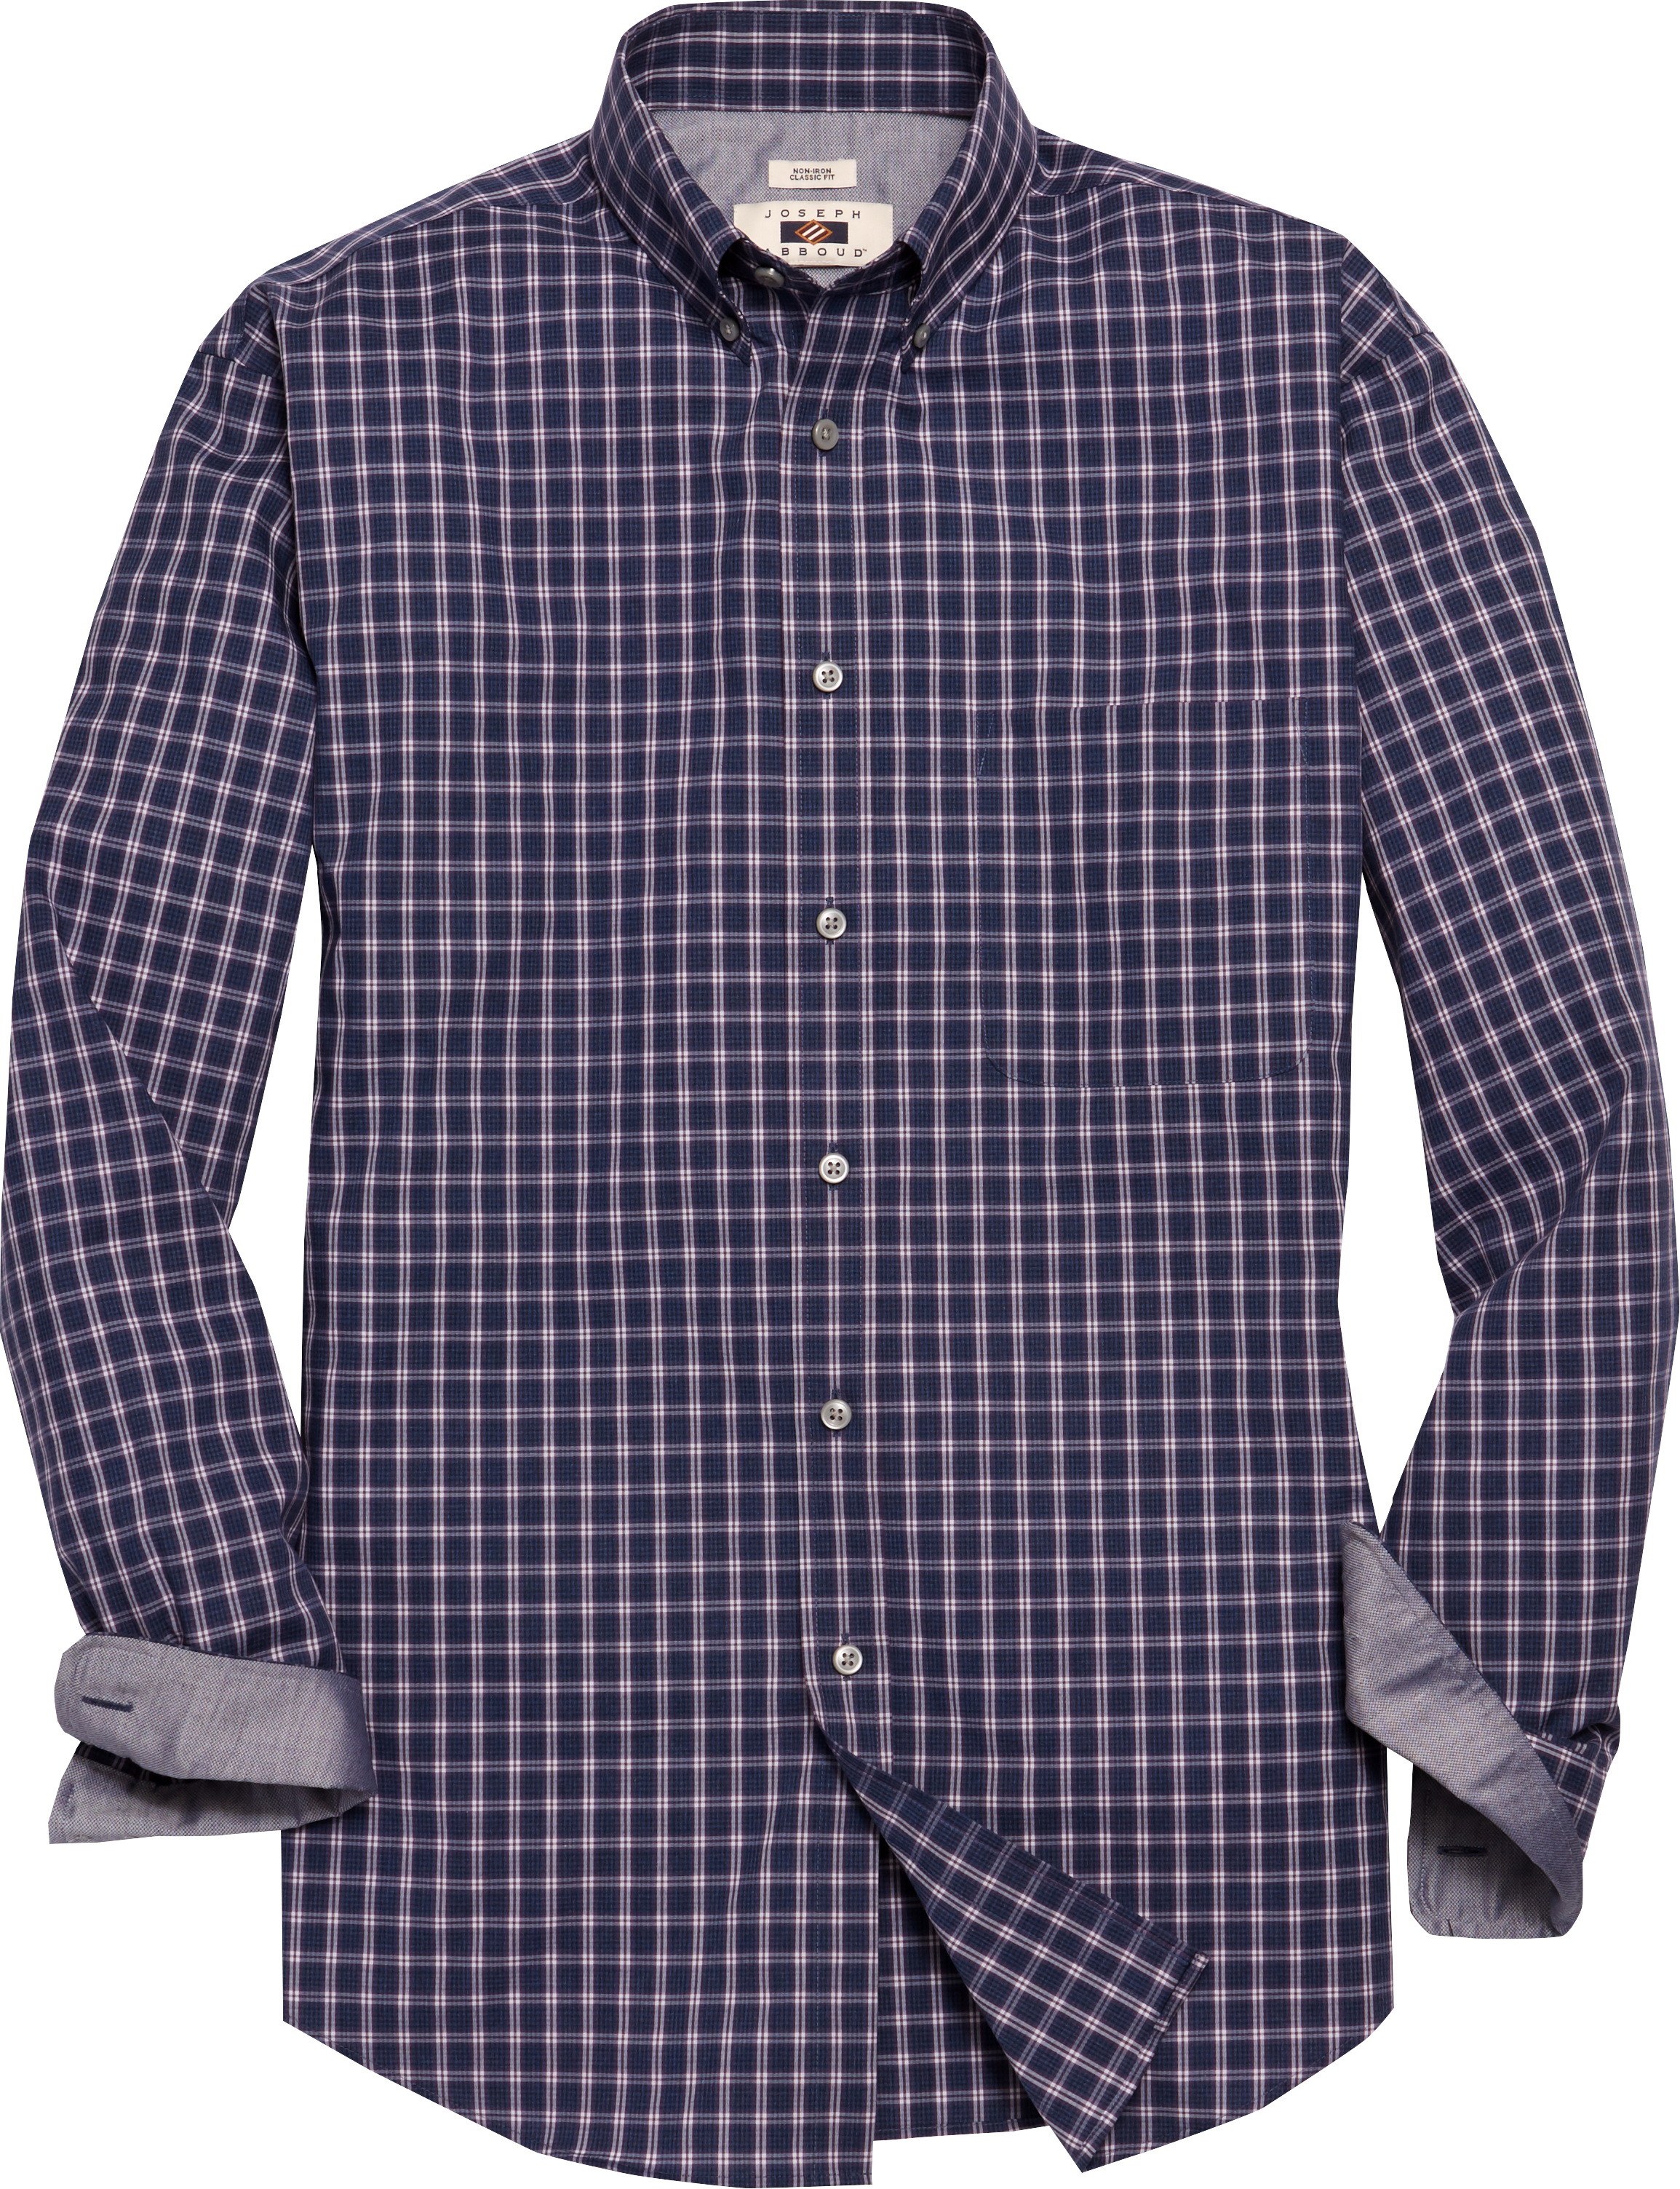 Joseph Abboud Navy & Purple Check Sport Shirt - Men's Sale | Men's ...